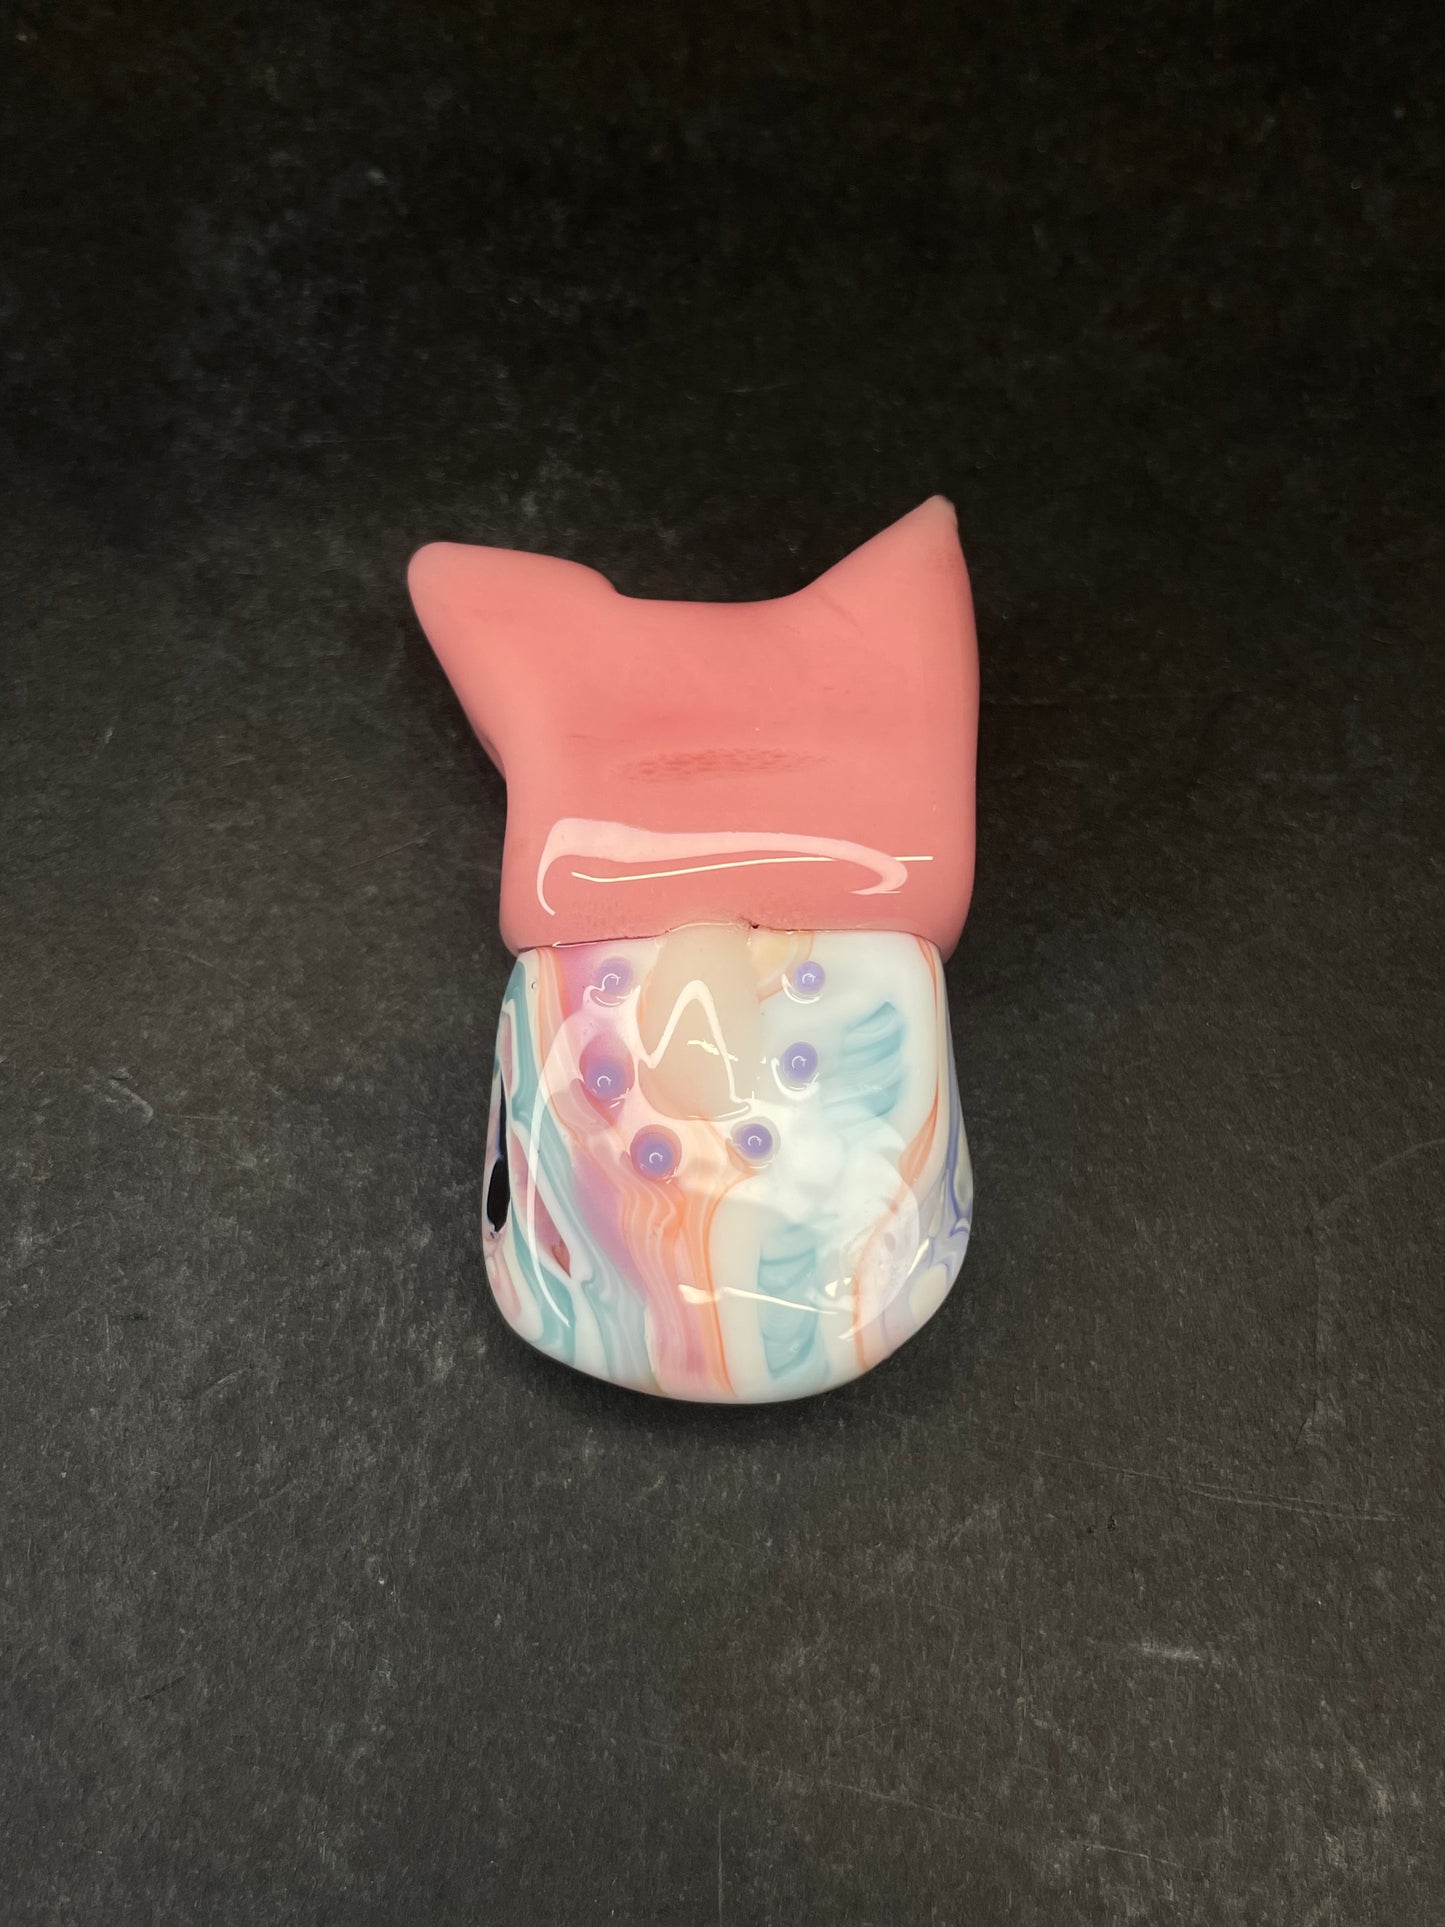 Pastel Kitty Kiwi Pendant by Sakibomb x Trip A (Coogi Zoo)